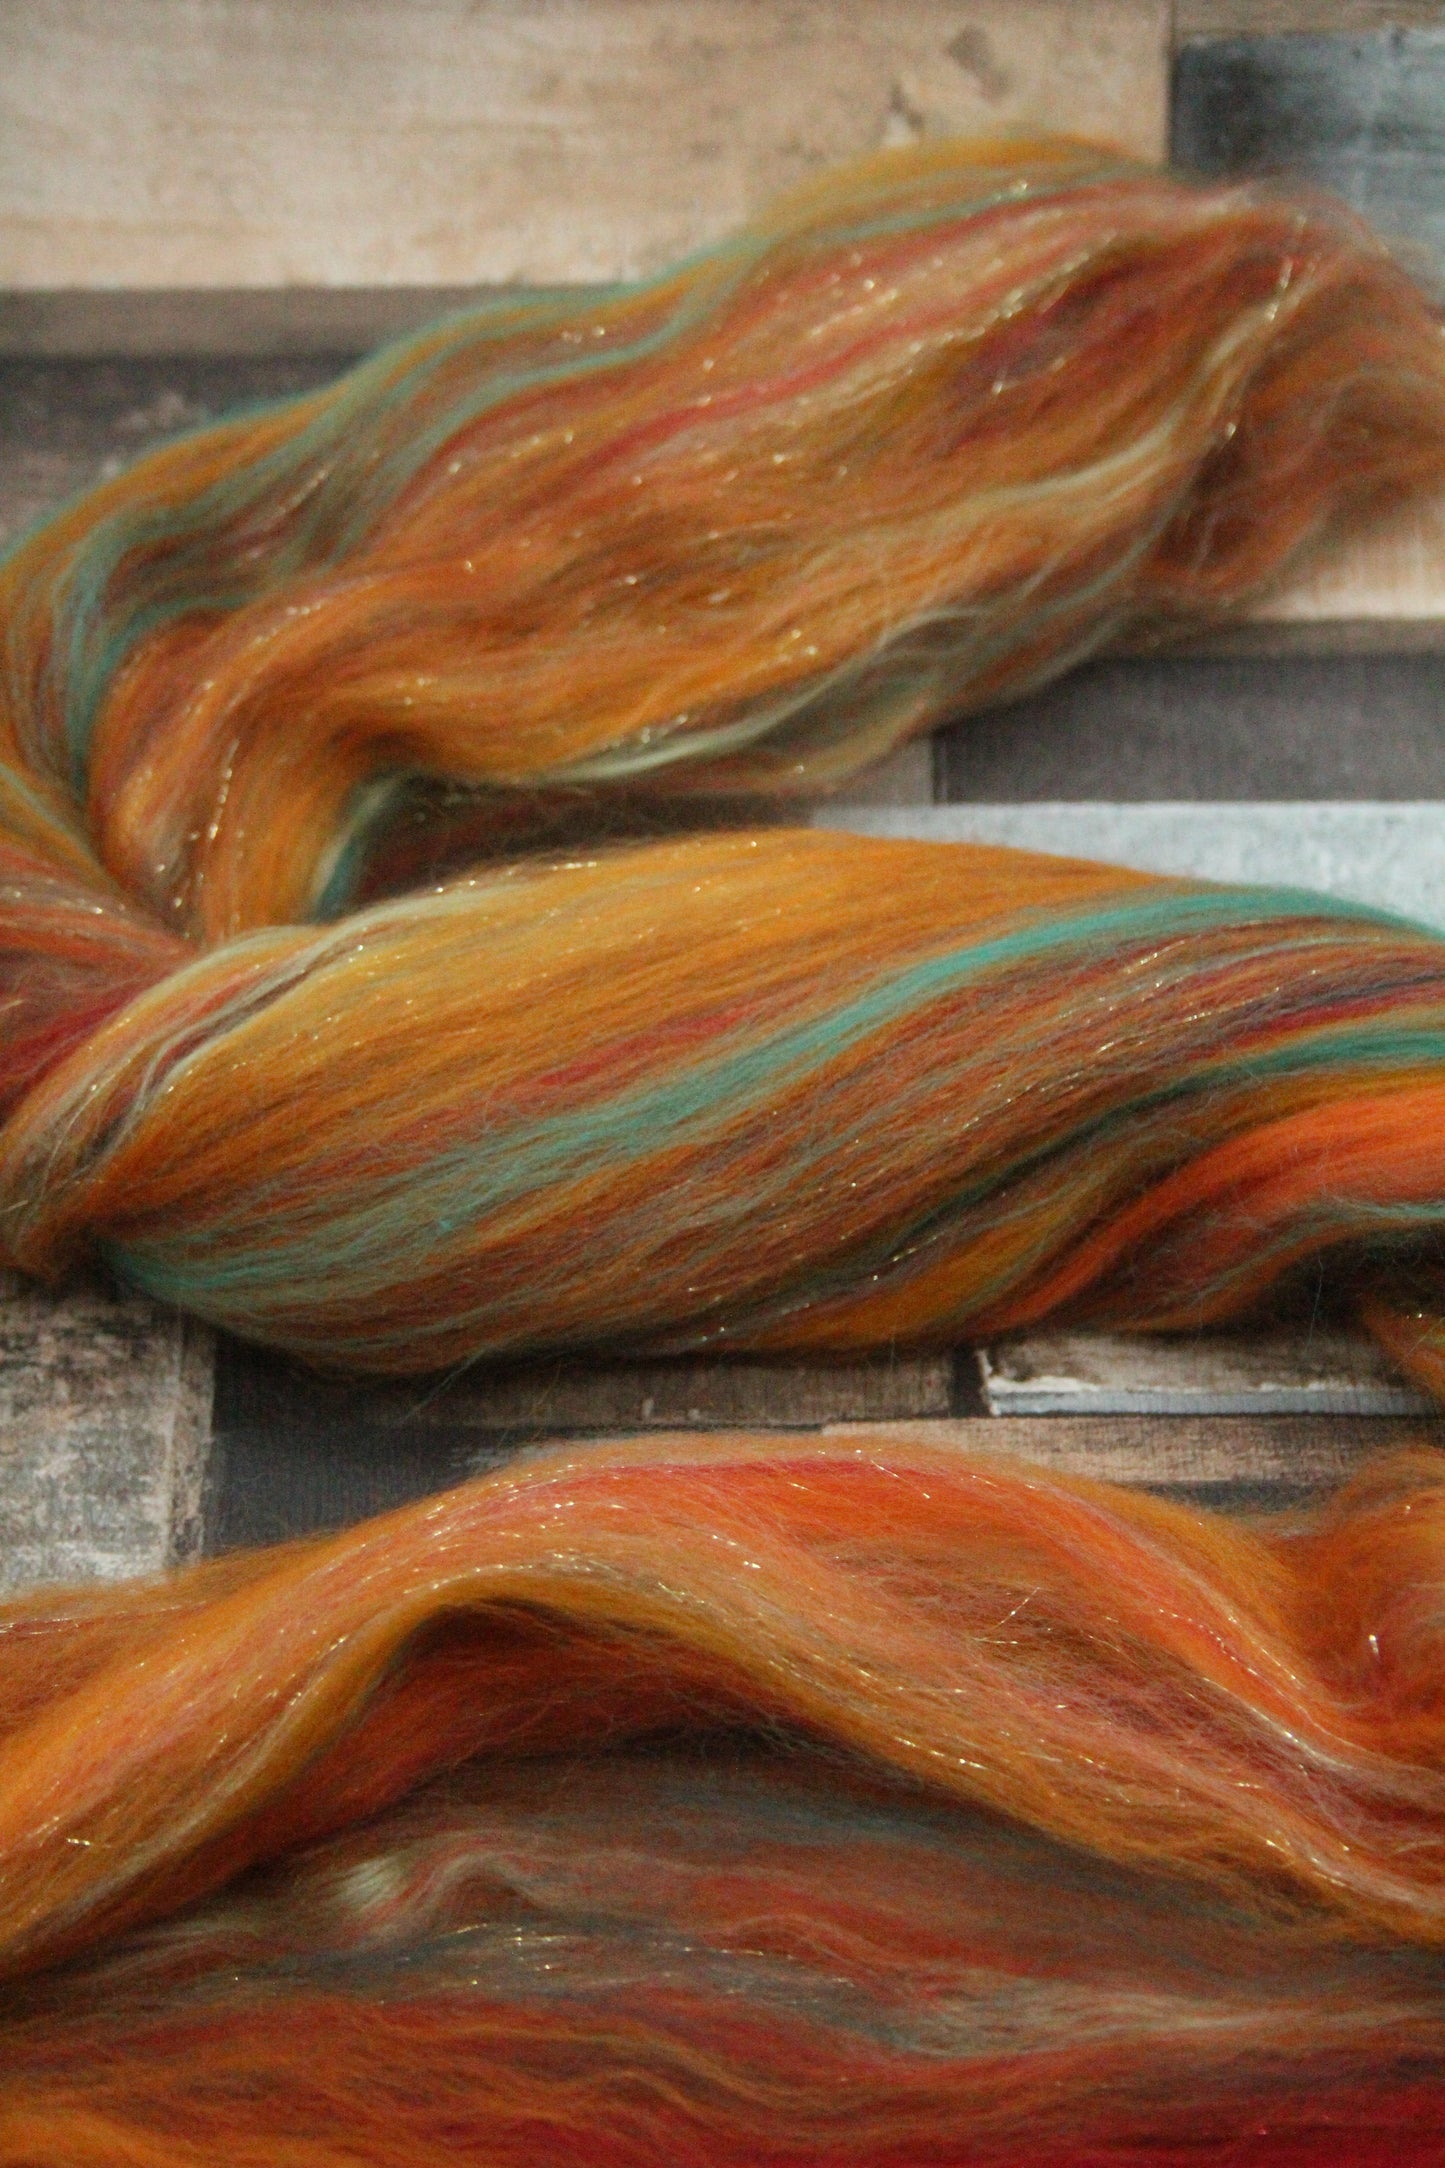 Merino Wool Blend - Orange Brown Green Red - 27 grams / 0.9 oz  - Fibre for felting, weaving or spinning